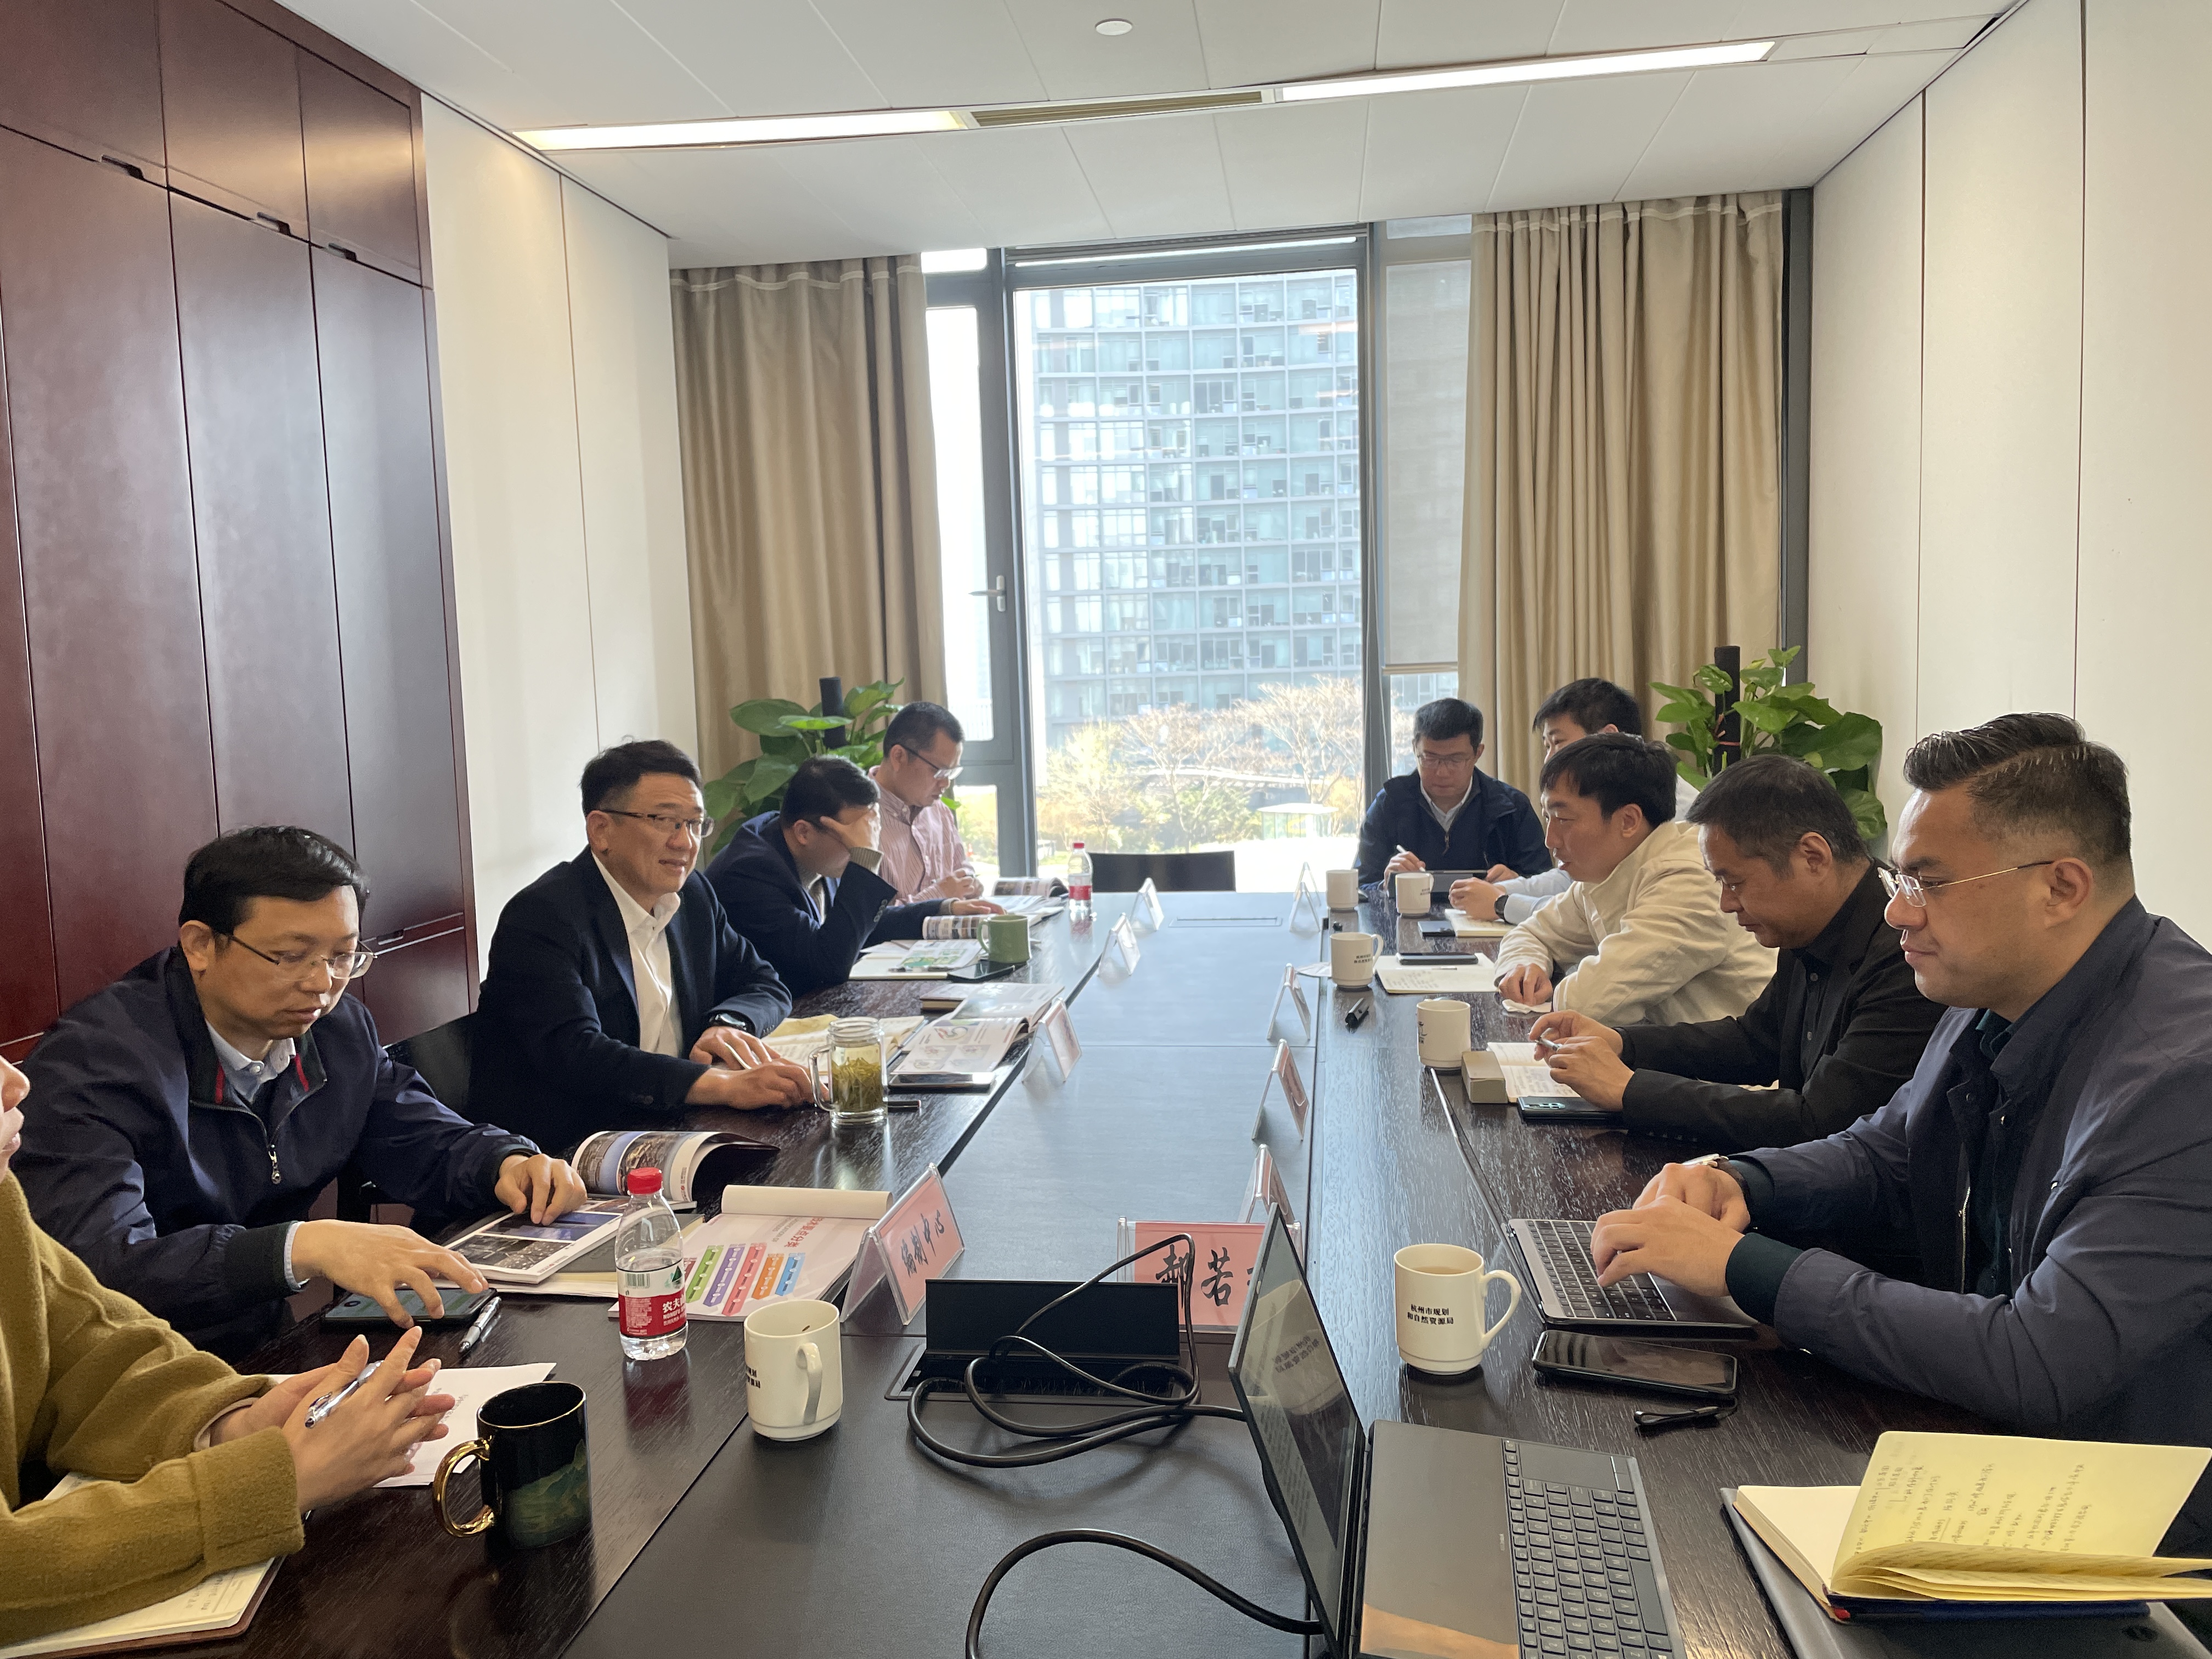 与集团和公司领导共同拜访杭州市资规局，并就城市规划及投融资展开探讨